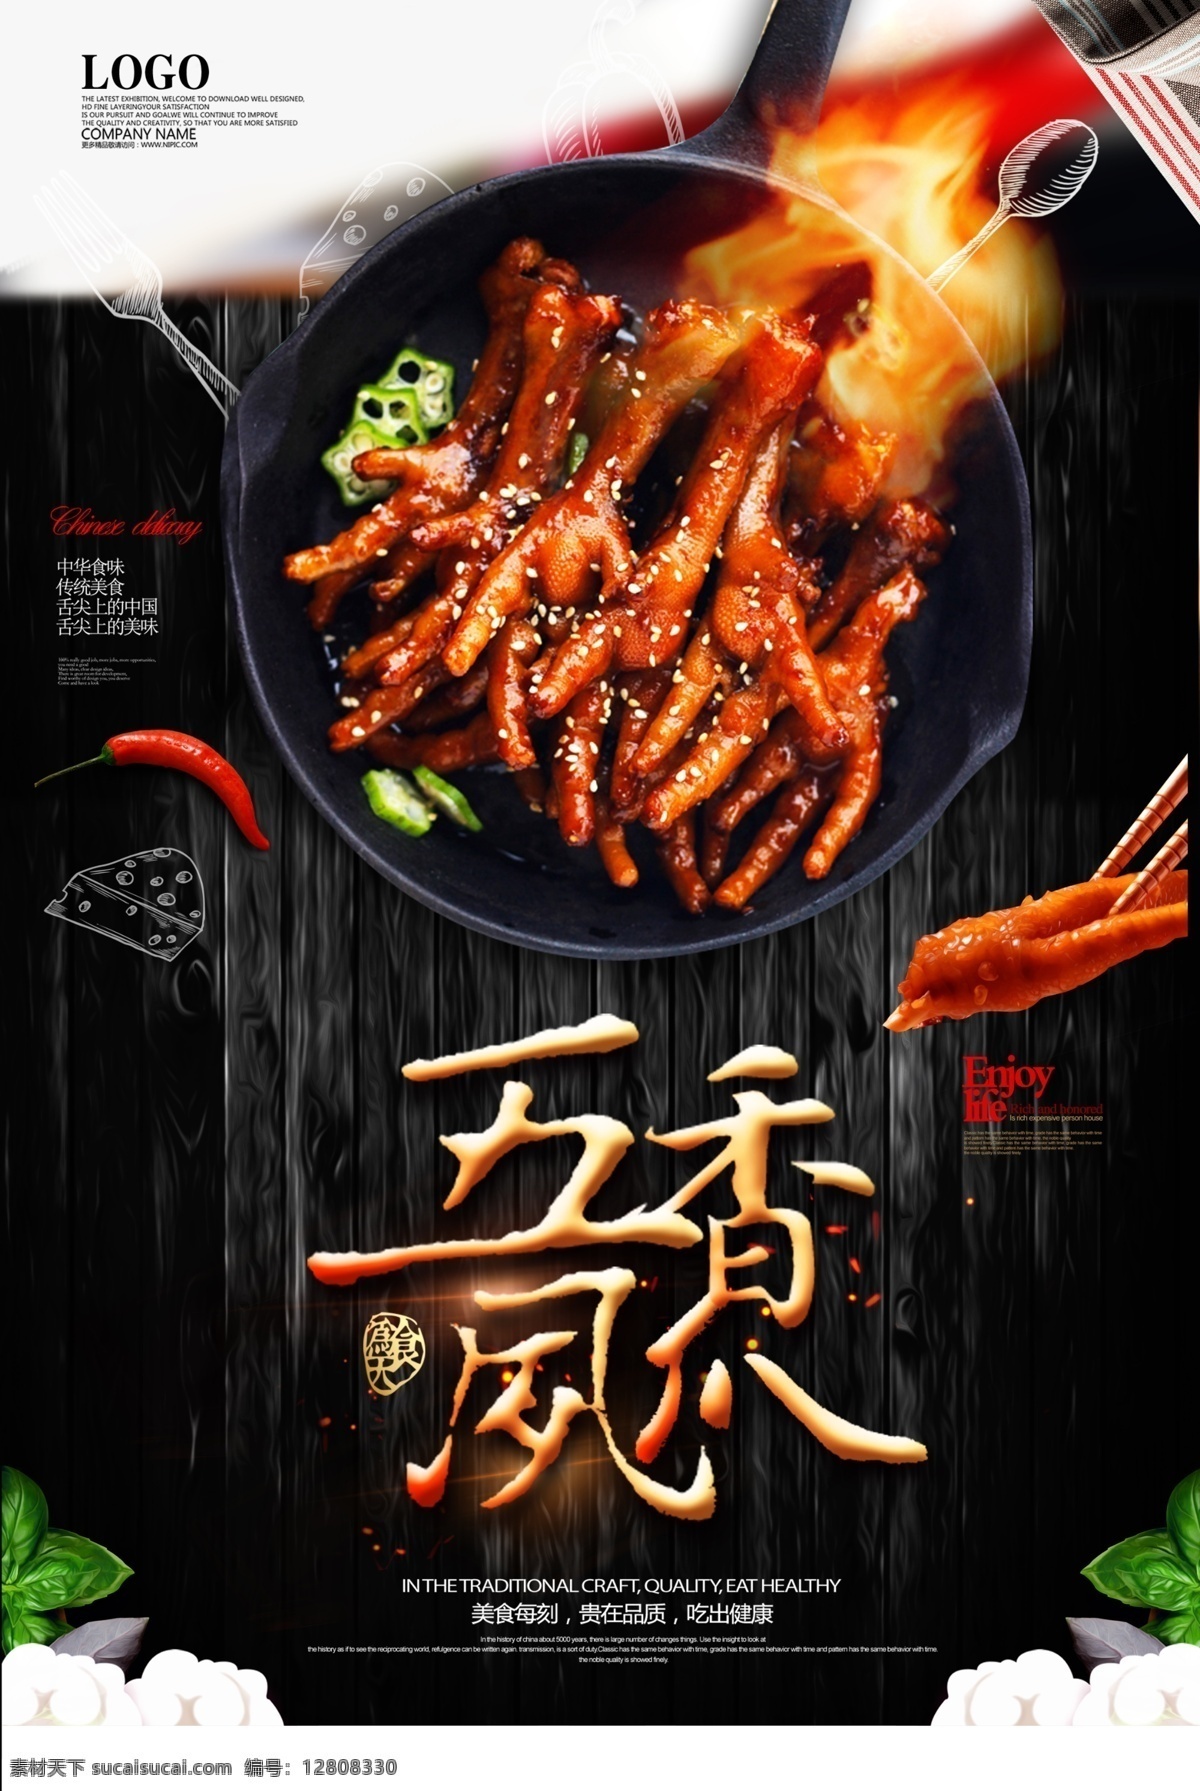 创意 美食 五香 凤爪 海报 中国风 食物 食品 美食海报 中华 熟食 泡椒凤爪 淘宝 电商 饮食文化 免费模版